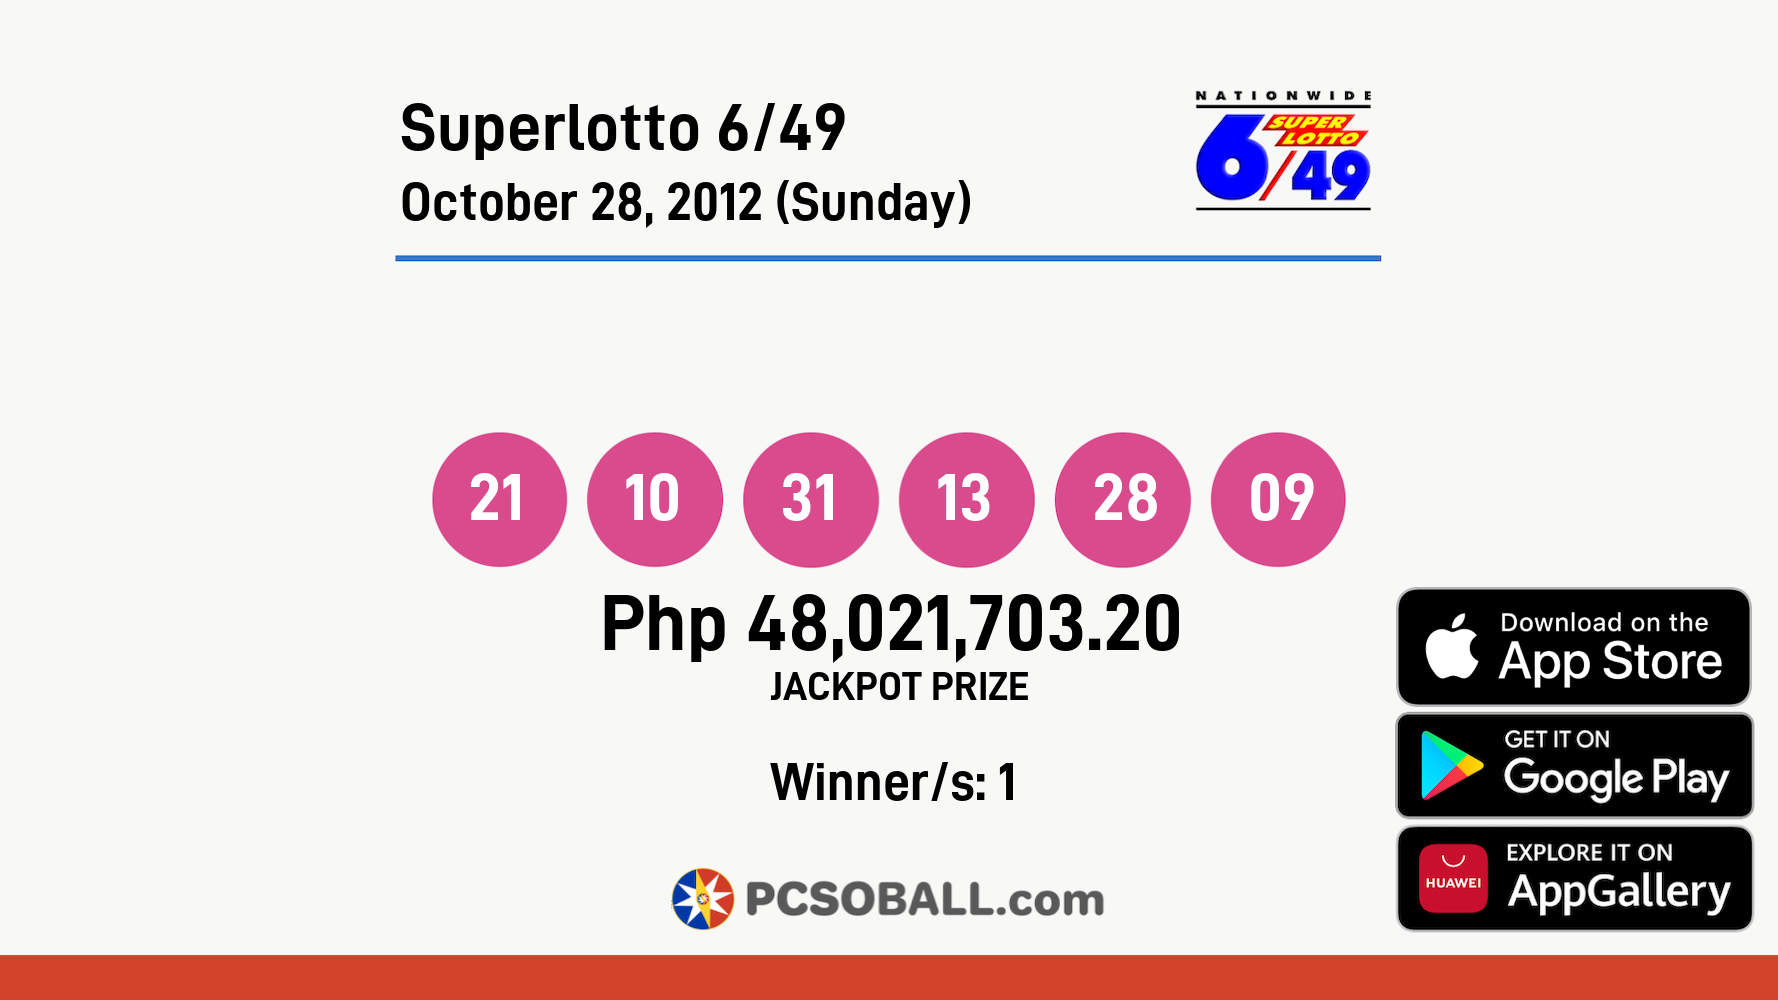 Superlotto 6/49 October 28, 2012 (Sunday) Result